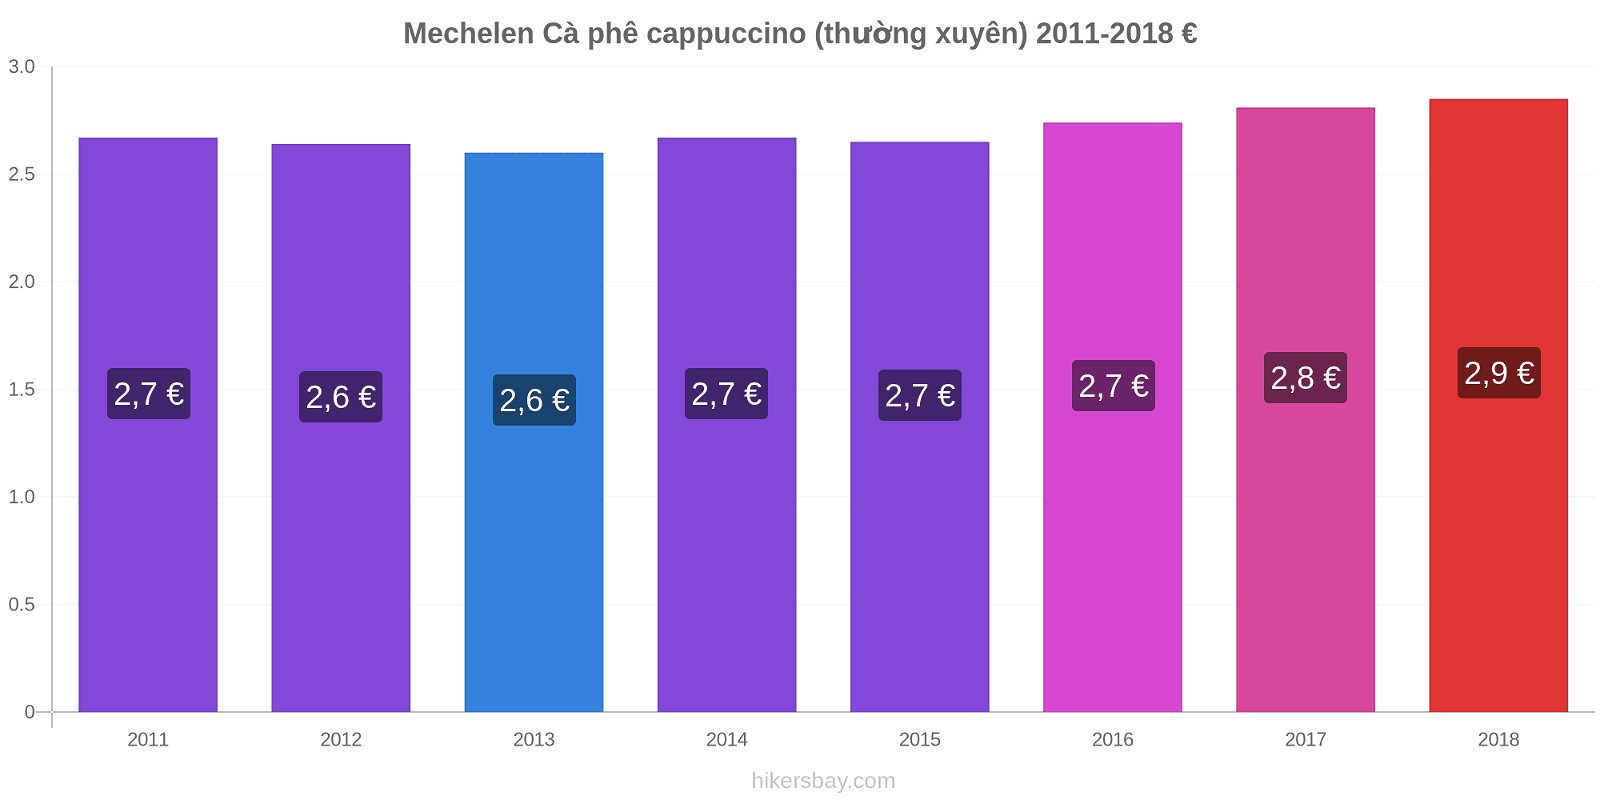 Mechelen thay đổi giá Cà phê cappuccino (thường xuyên) hikersbay.com